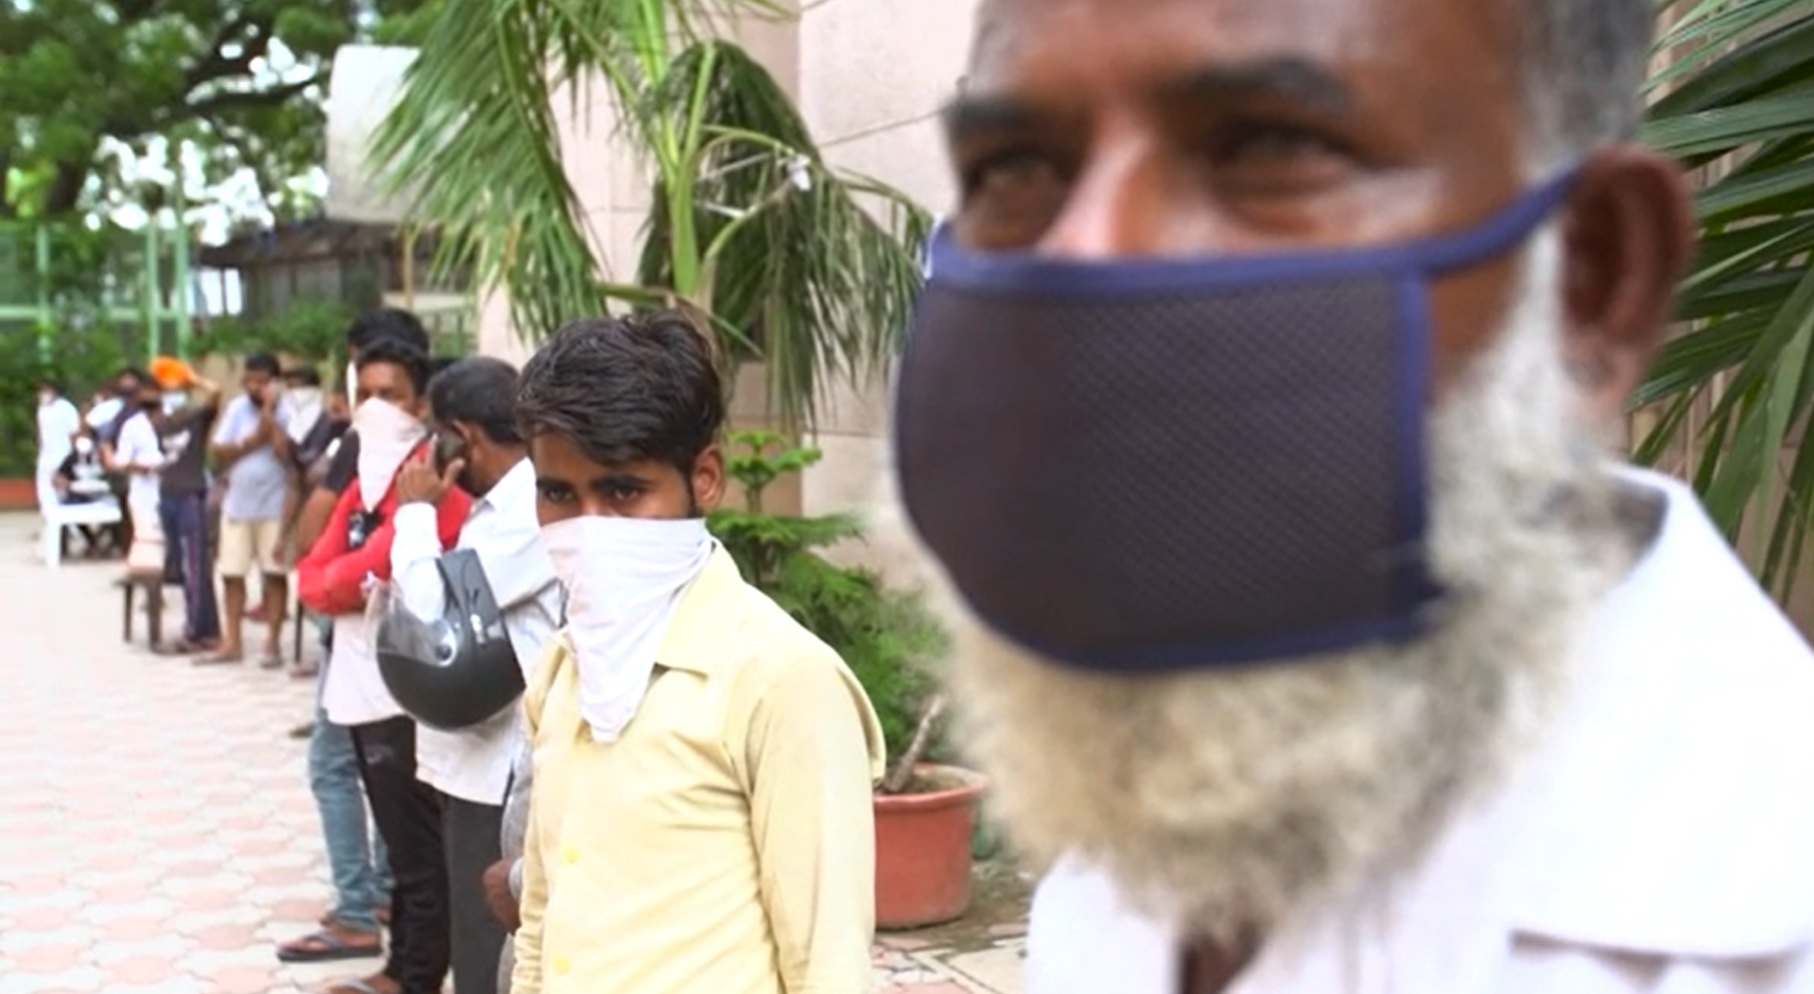 Indianos utilizam máscaras e lenços para proteção contra o coronavírus